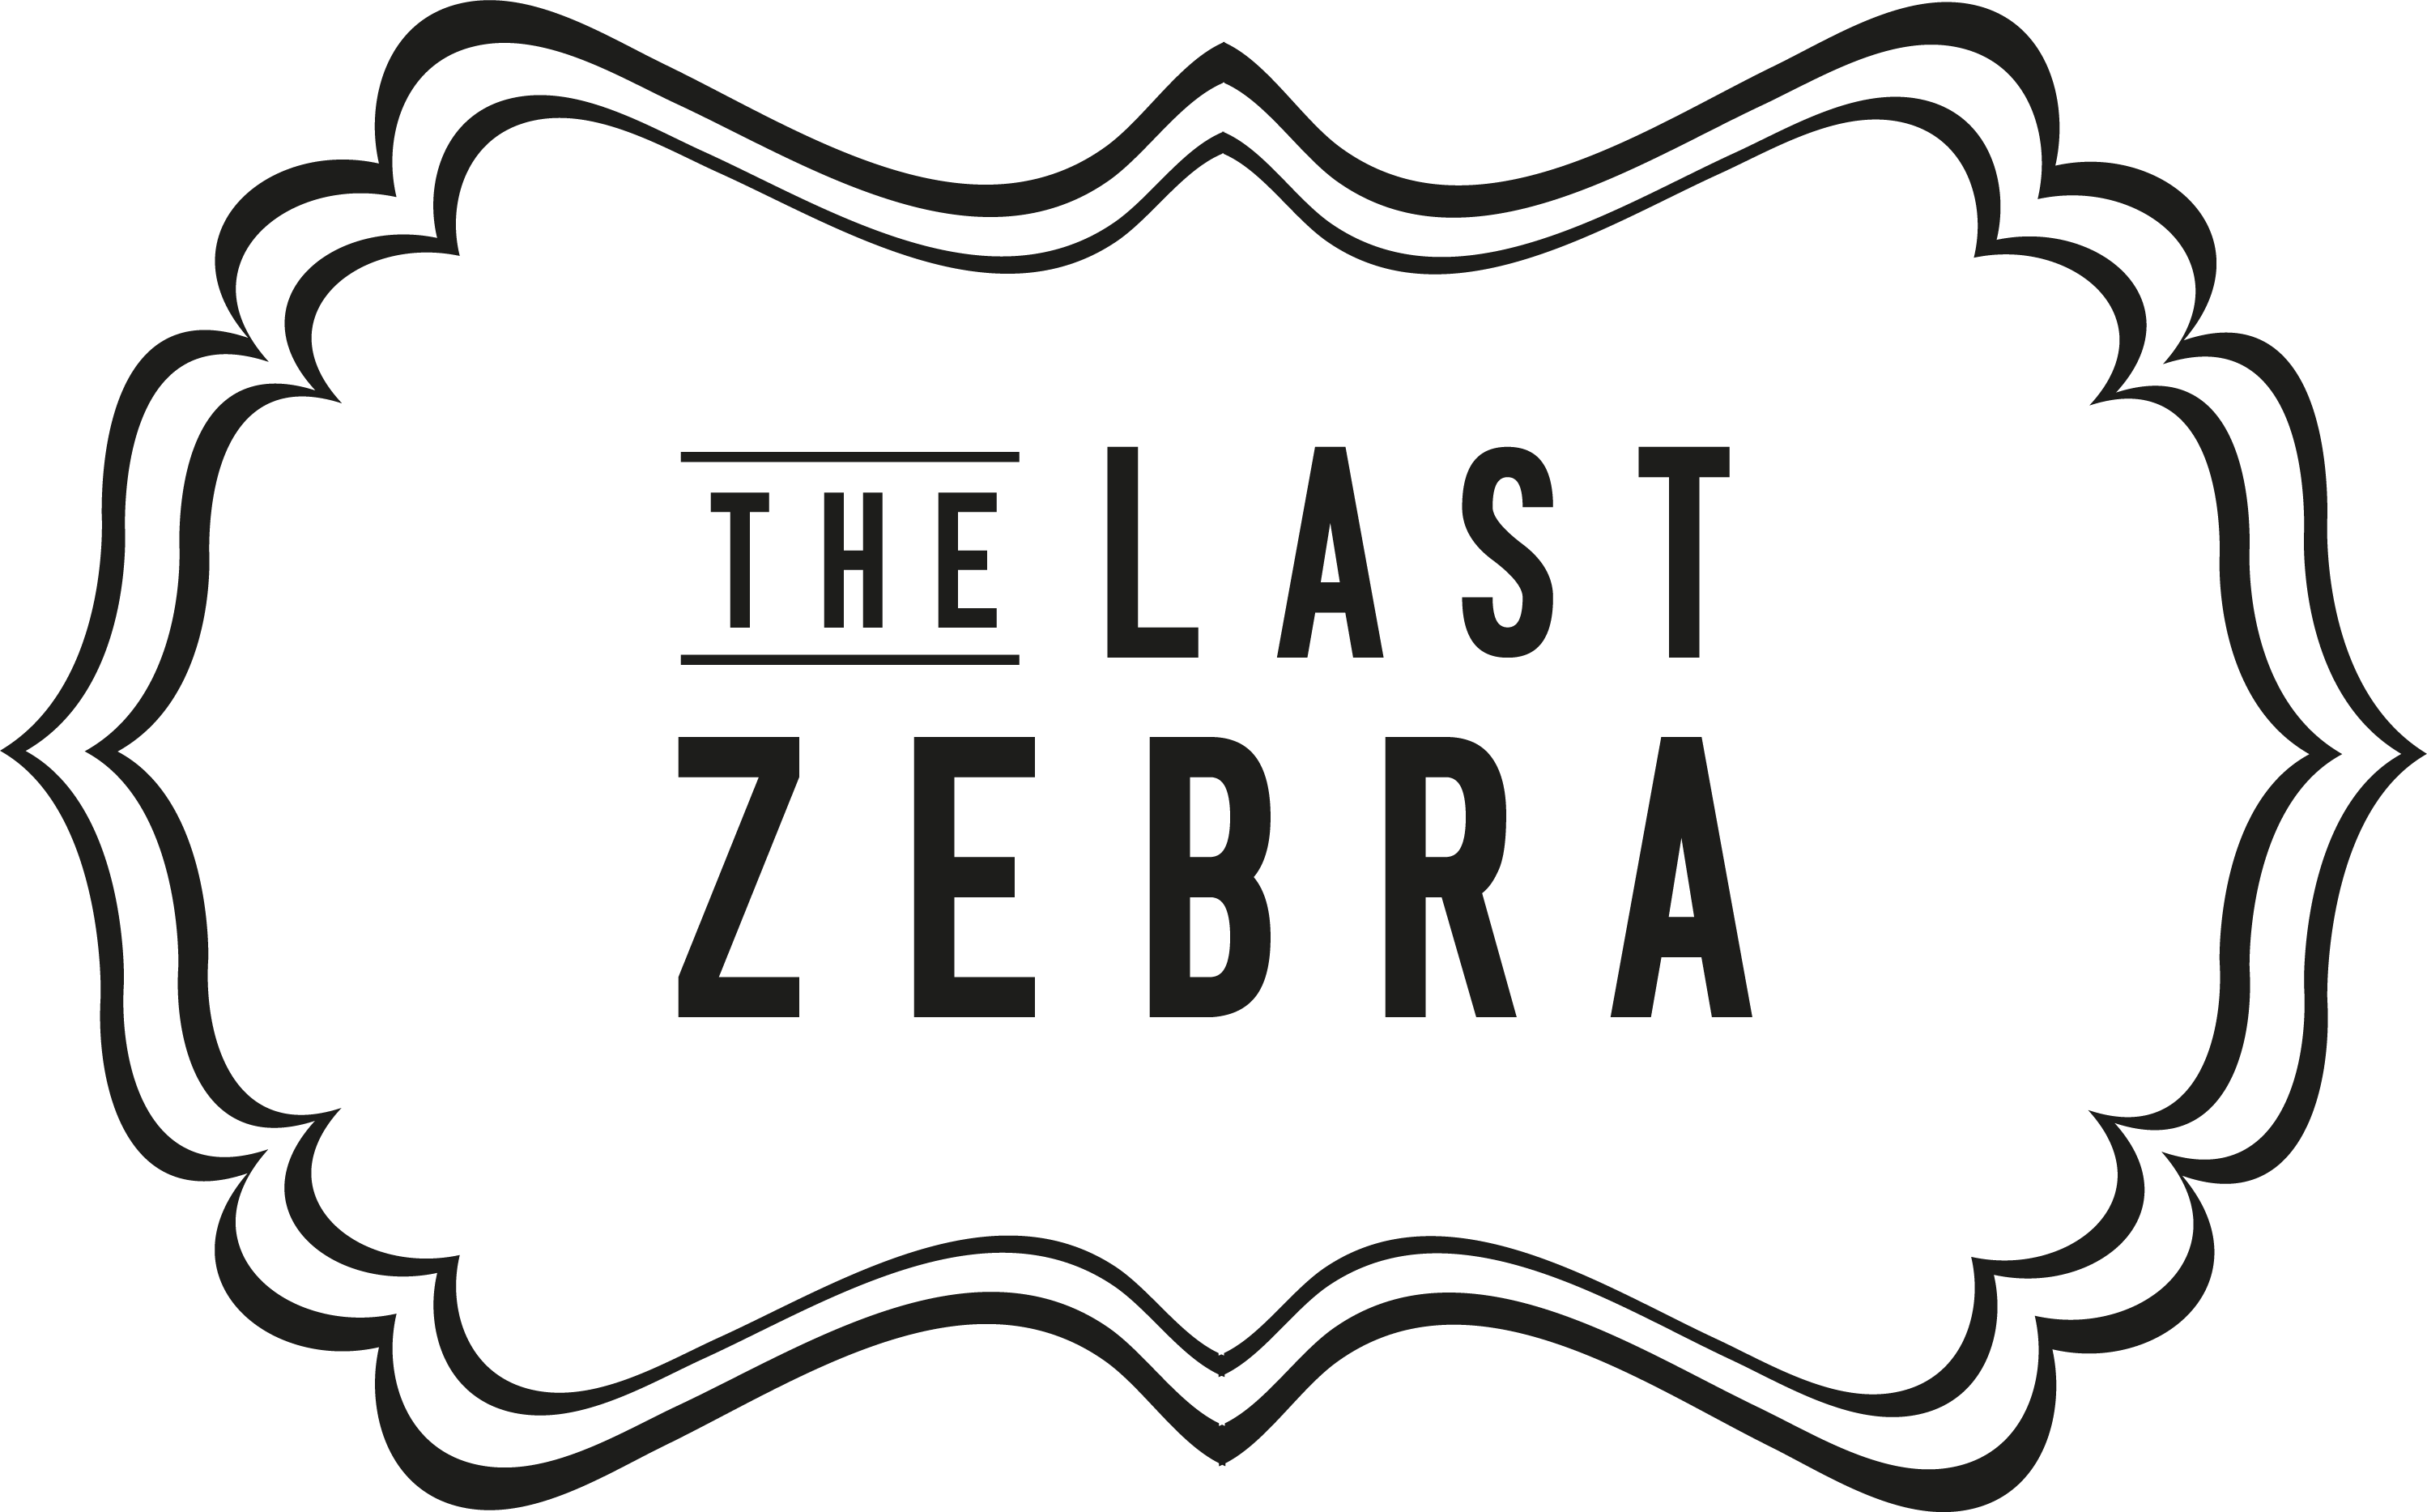 The Last Zebra